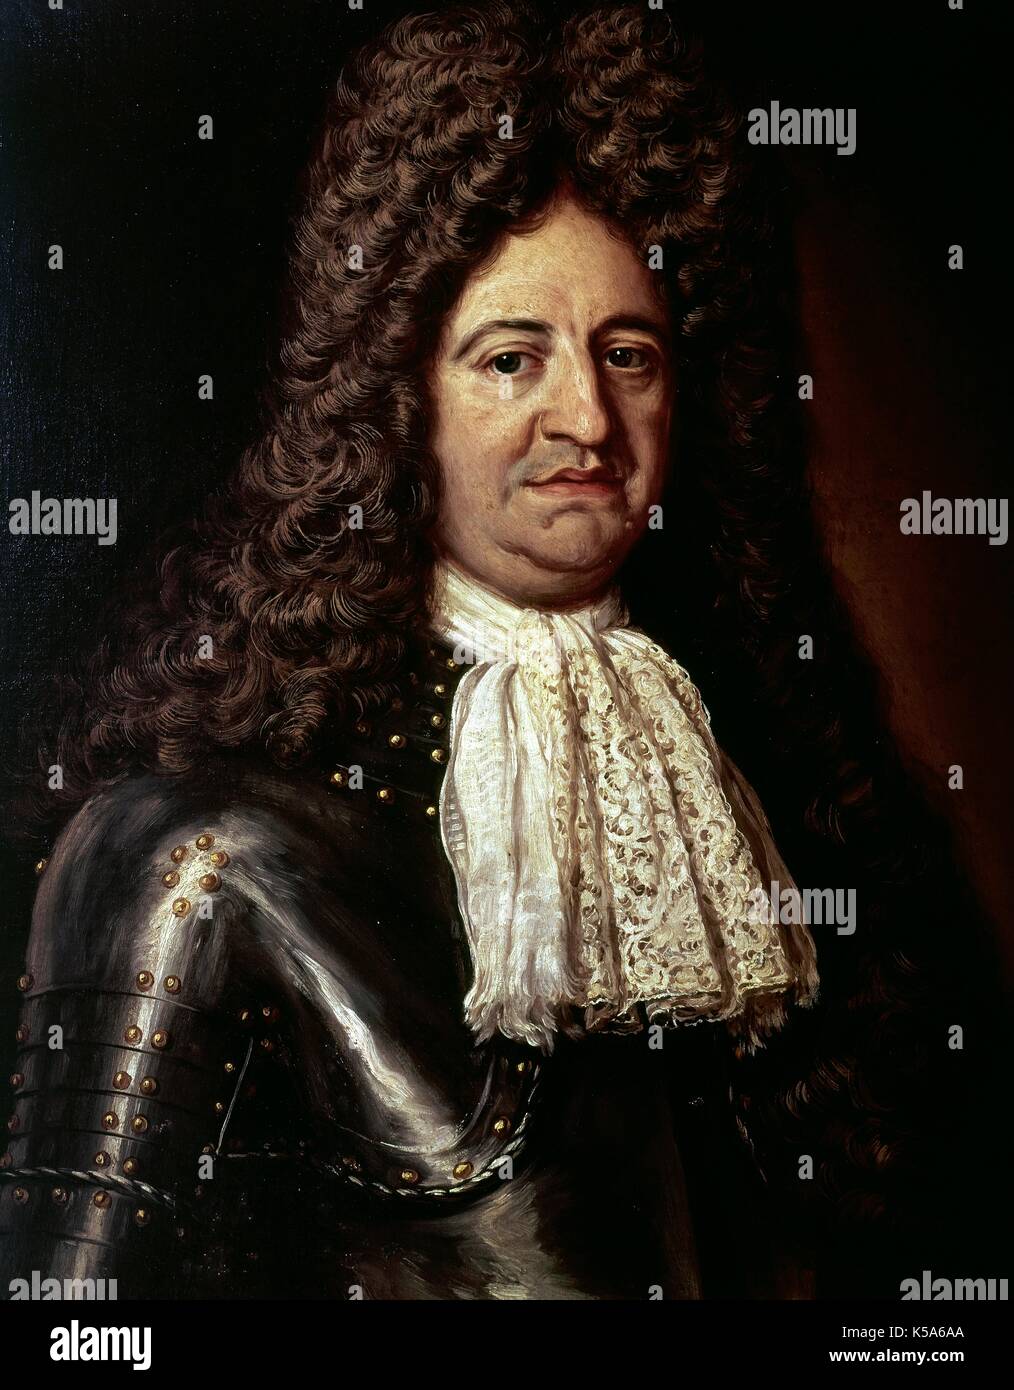 Louis XIV (1638-1715). Roi de France (1643-1715). Portrait par Hyacinthe Rigaud, 1702. L'hôpital de Tavera. Tolède, Castille La Manche, Espagne. Banque D'Images